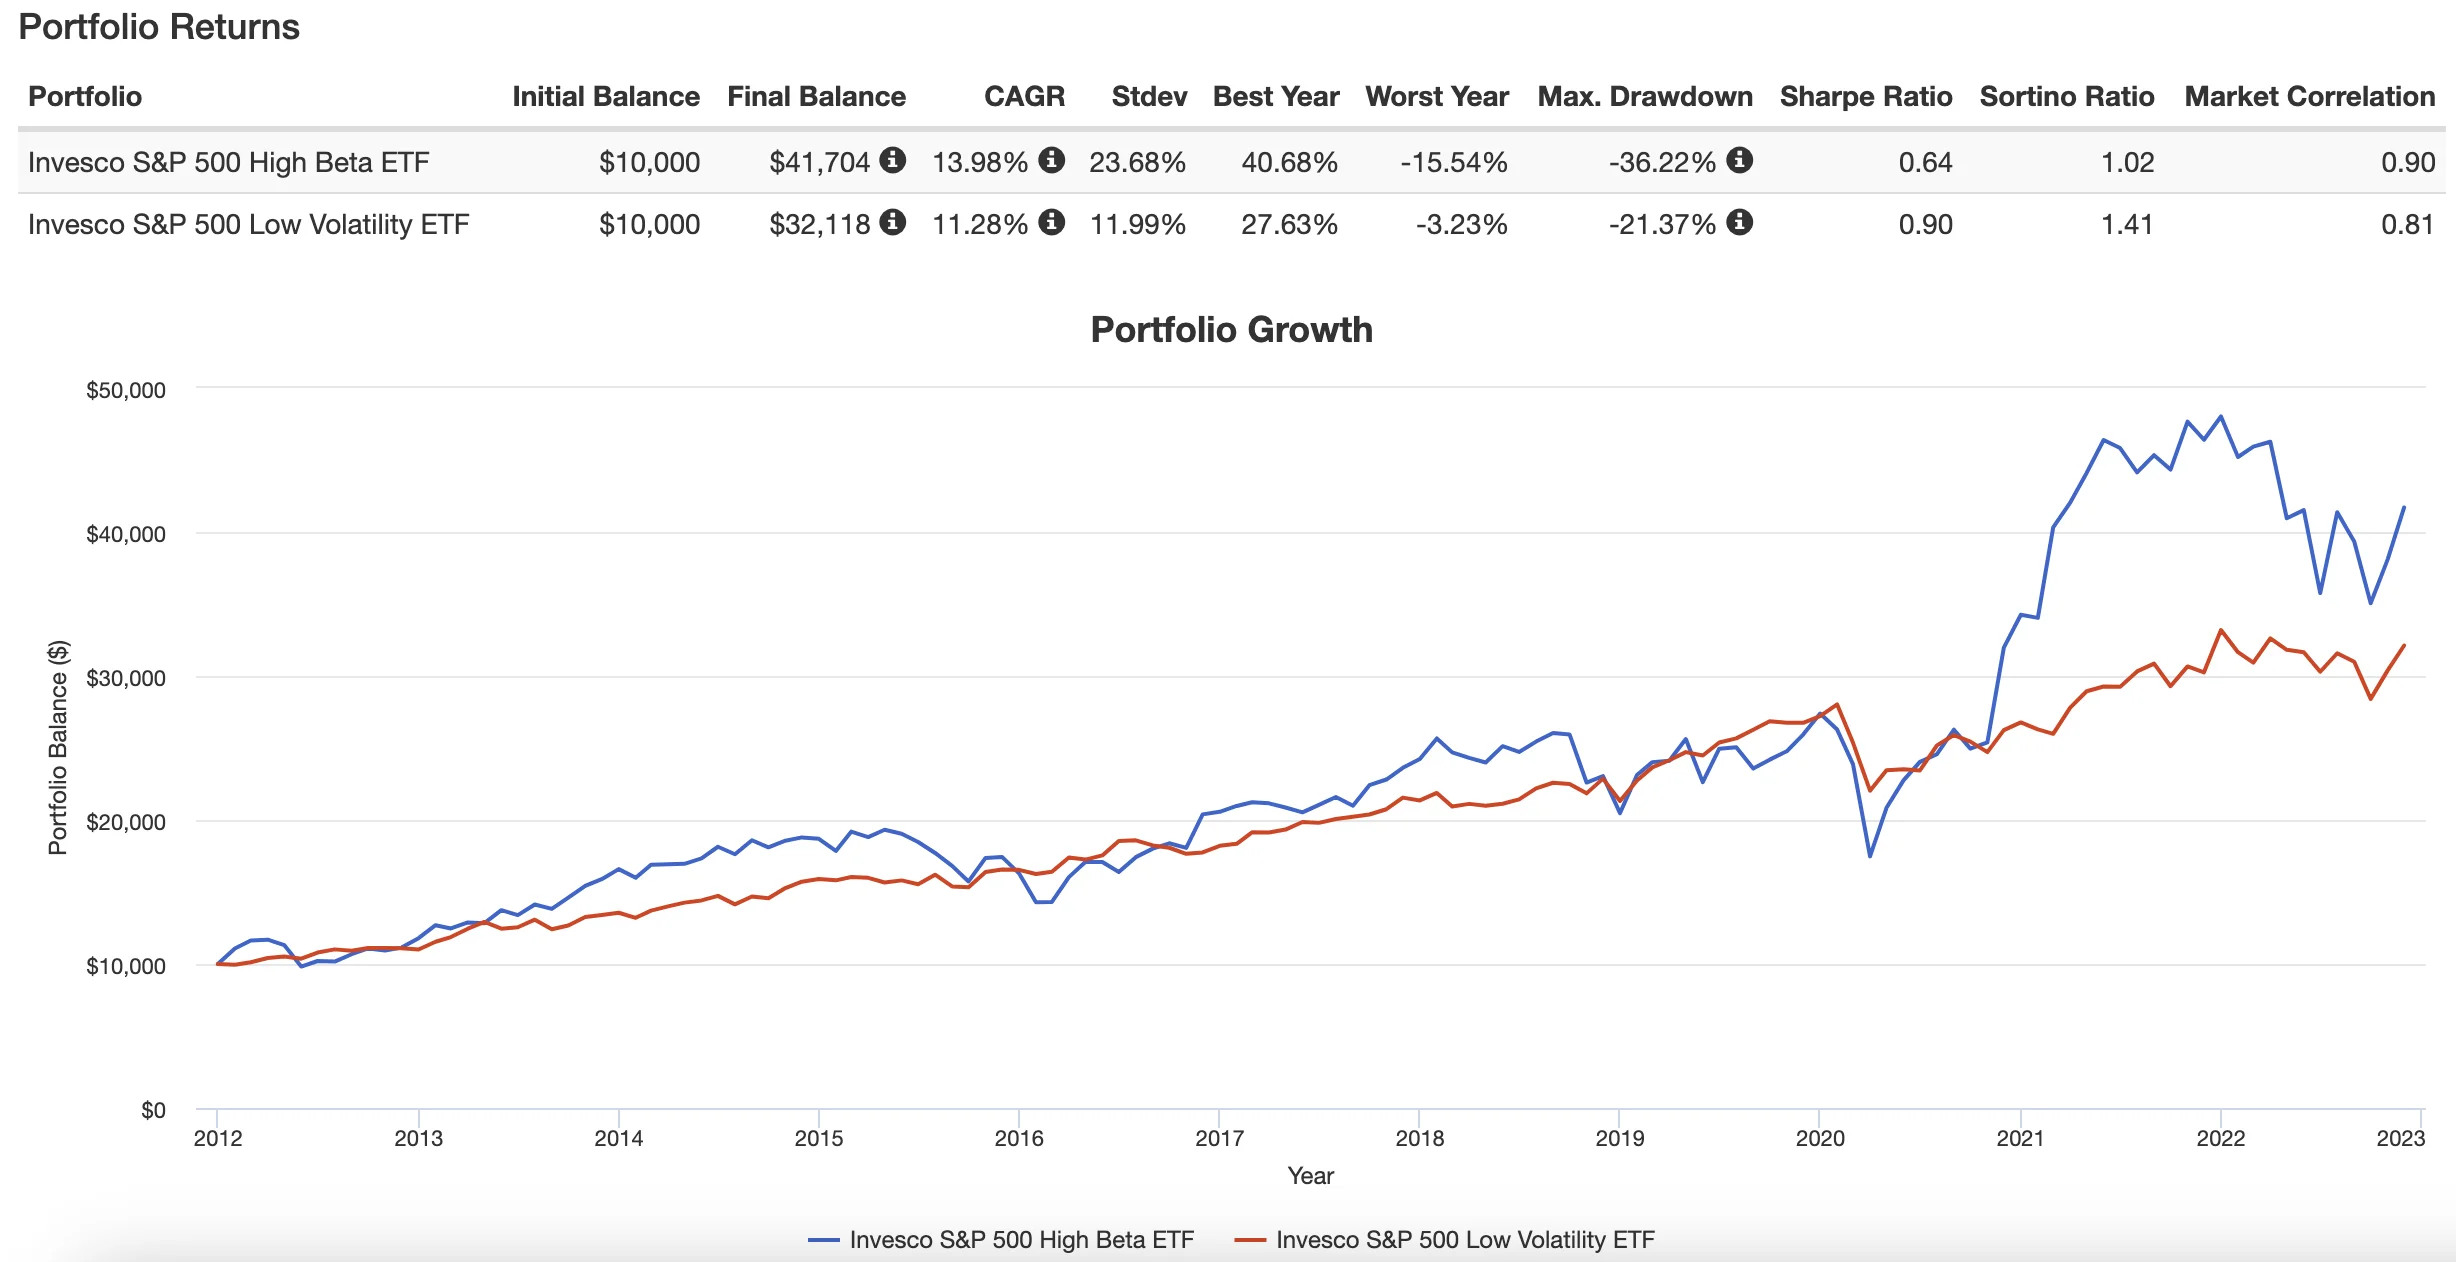 S&P 500 High Beta ETF vs S&P 500 Low Volatility ETF